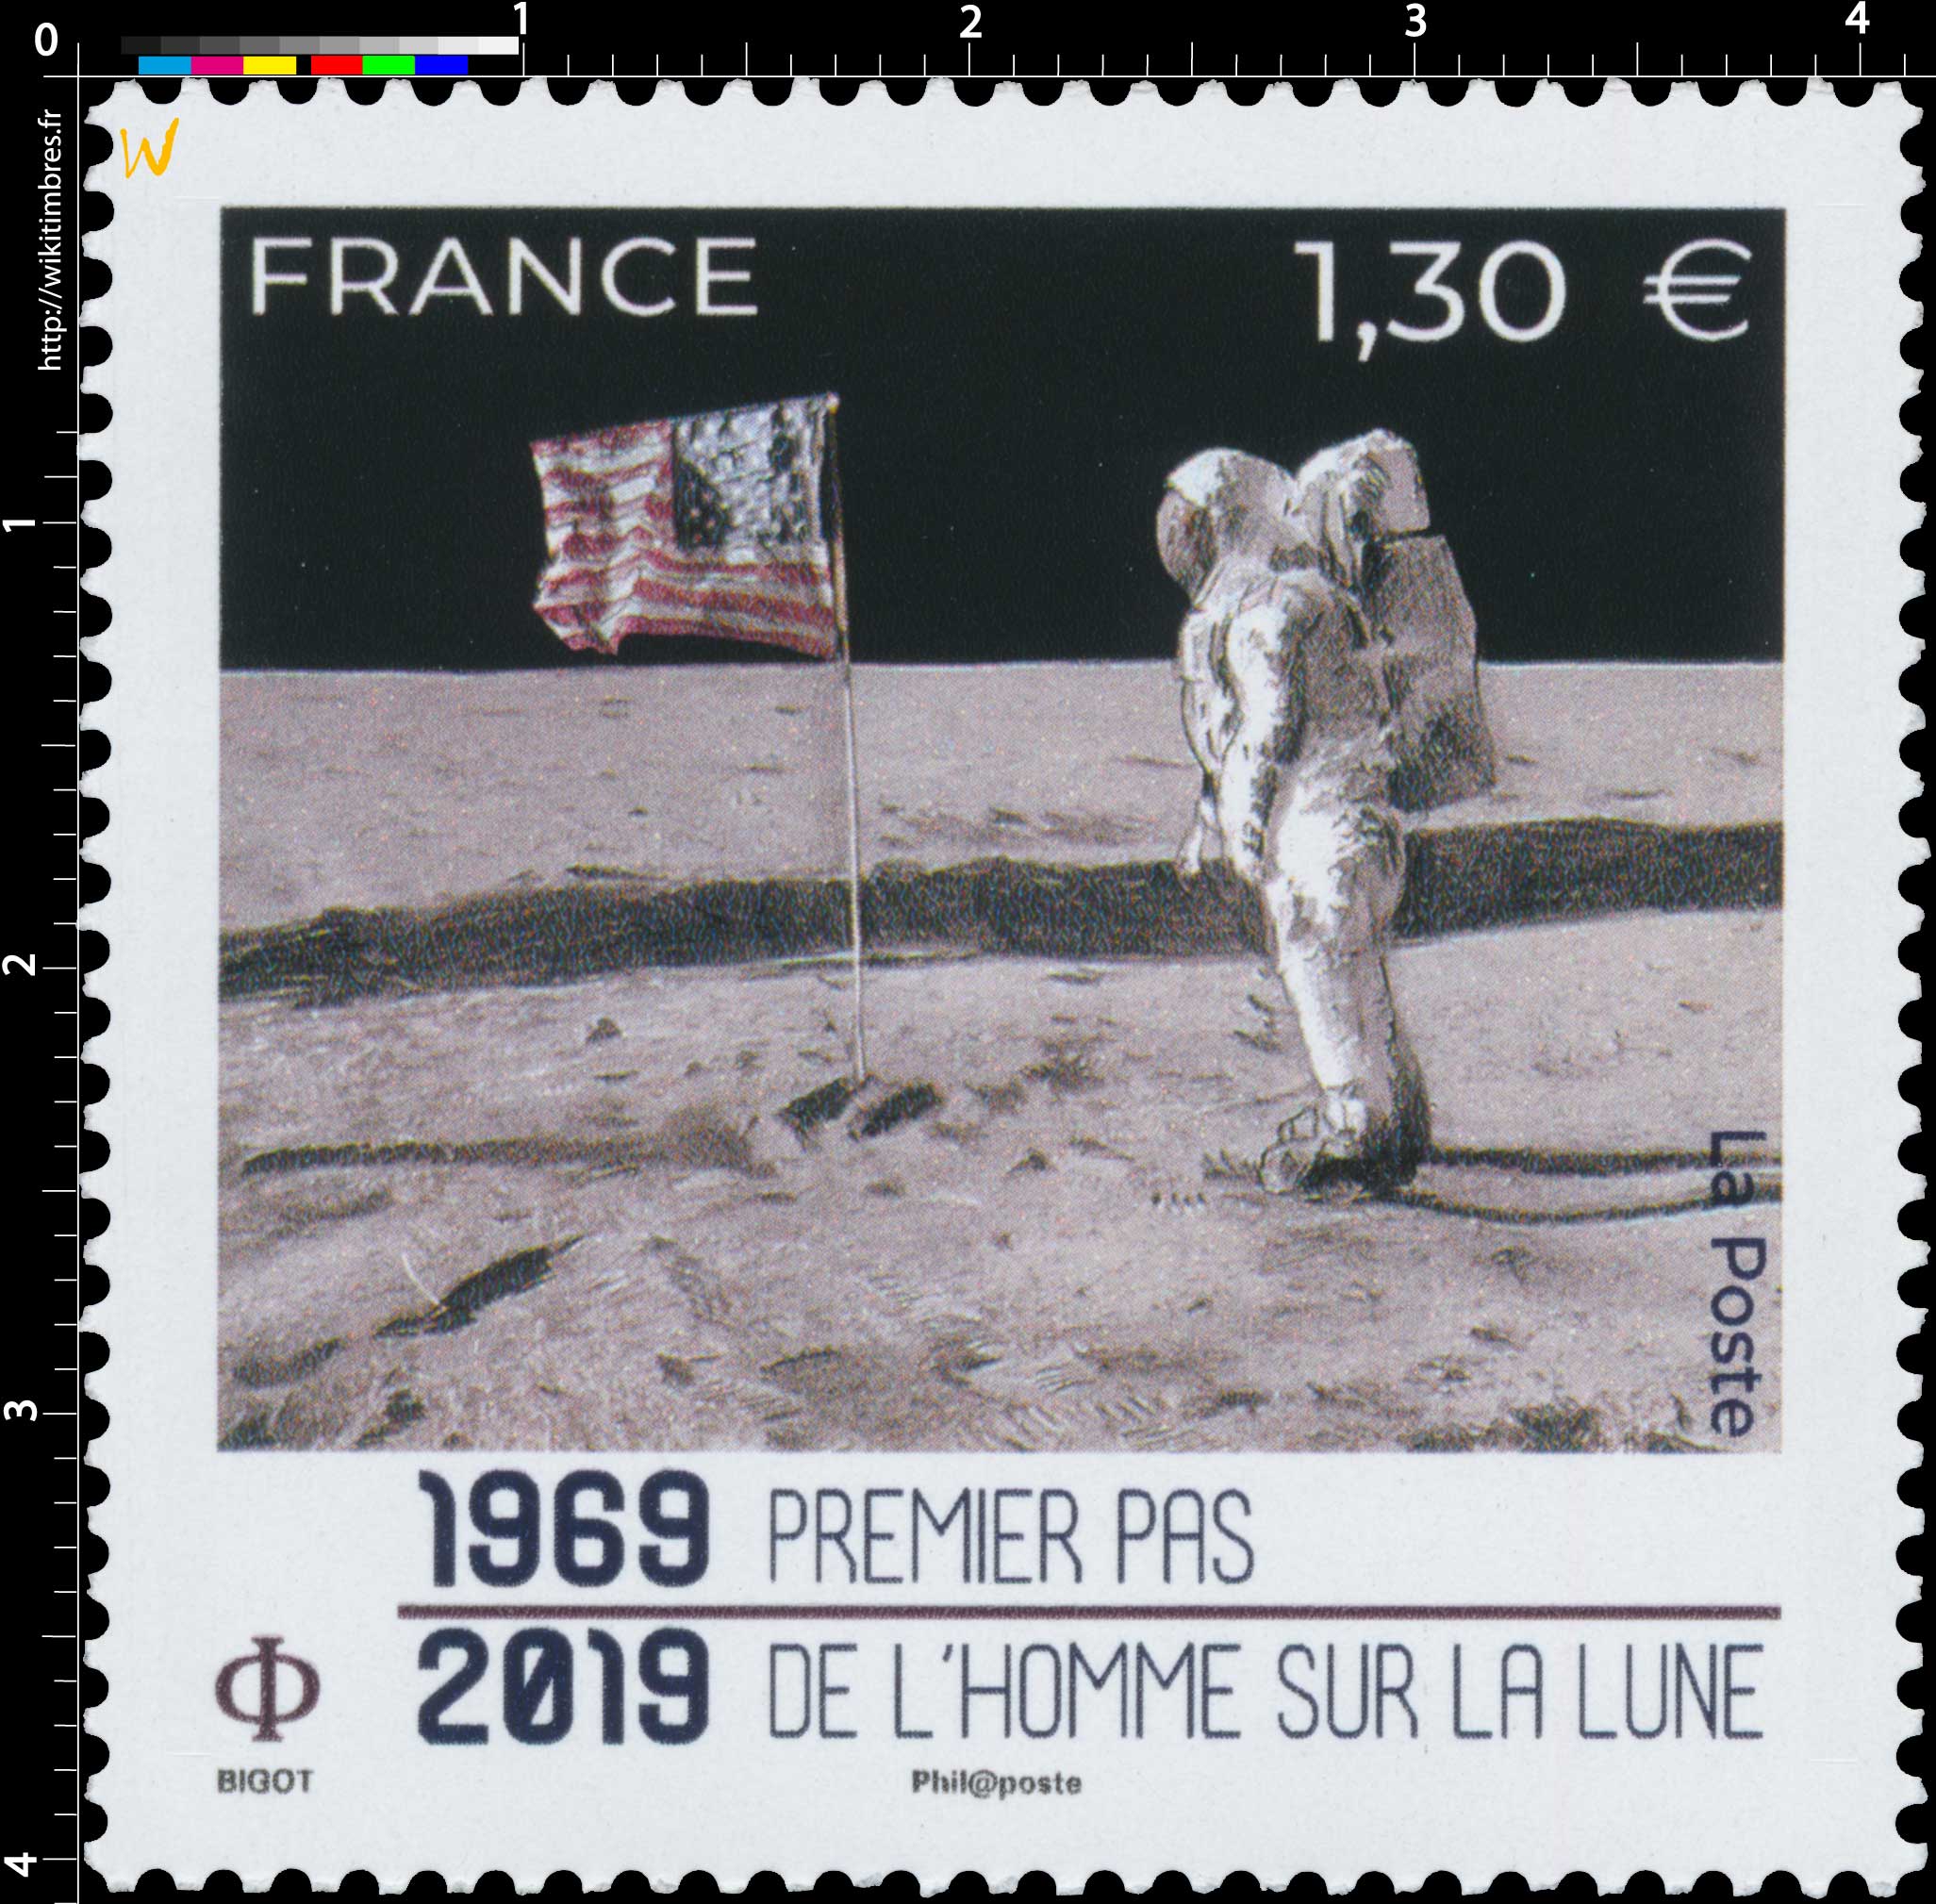 1969 - 2019 Premier pas de l'Homme sur la Lune